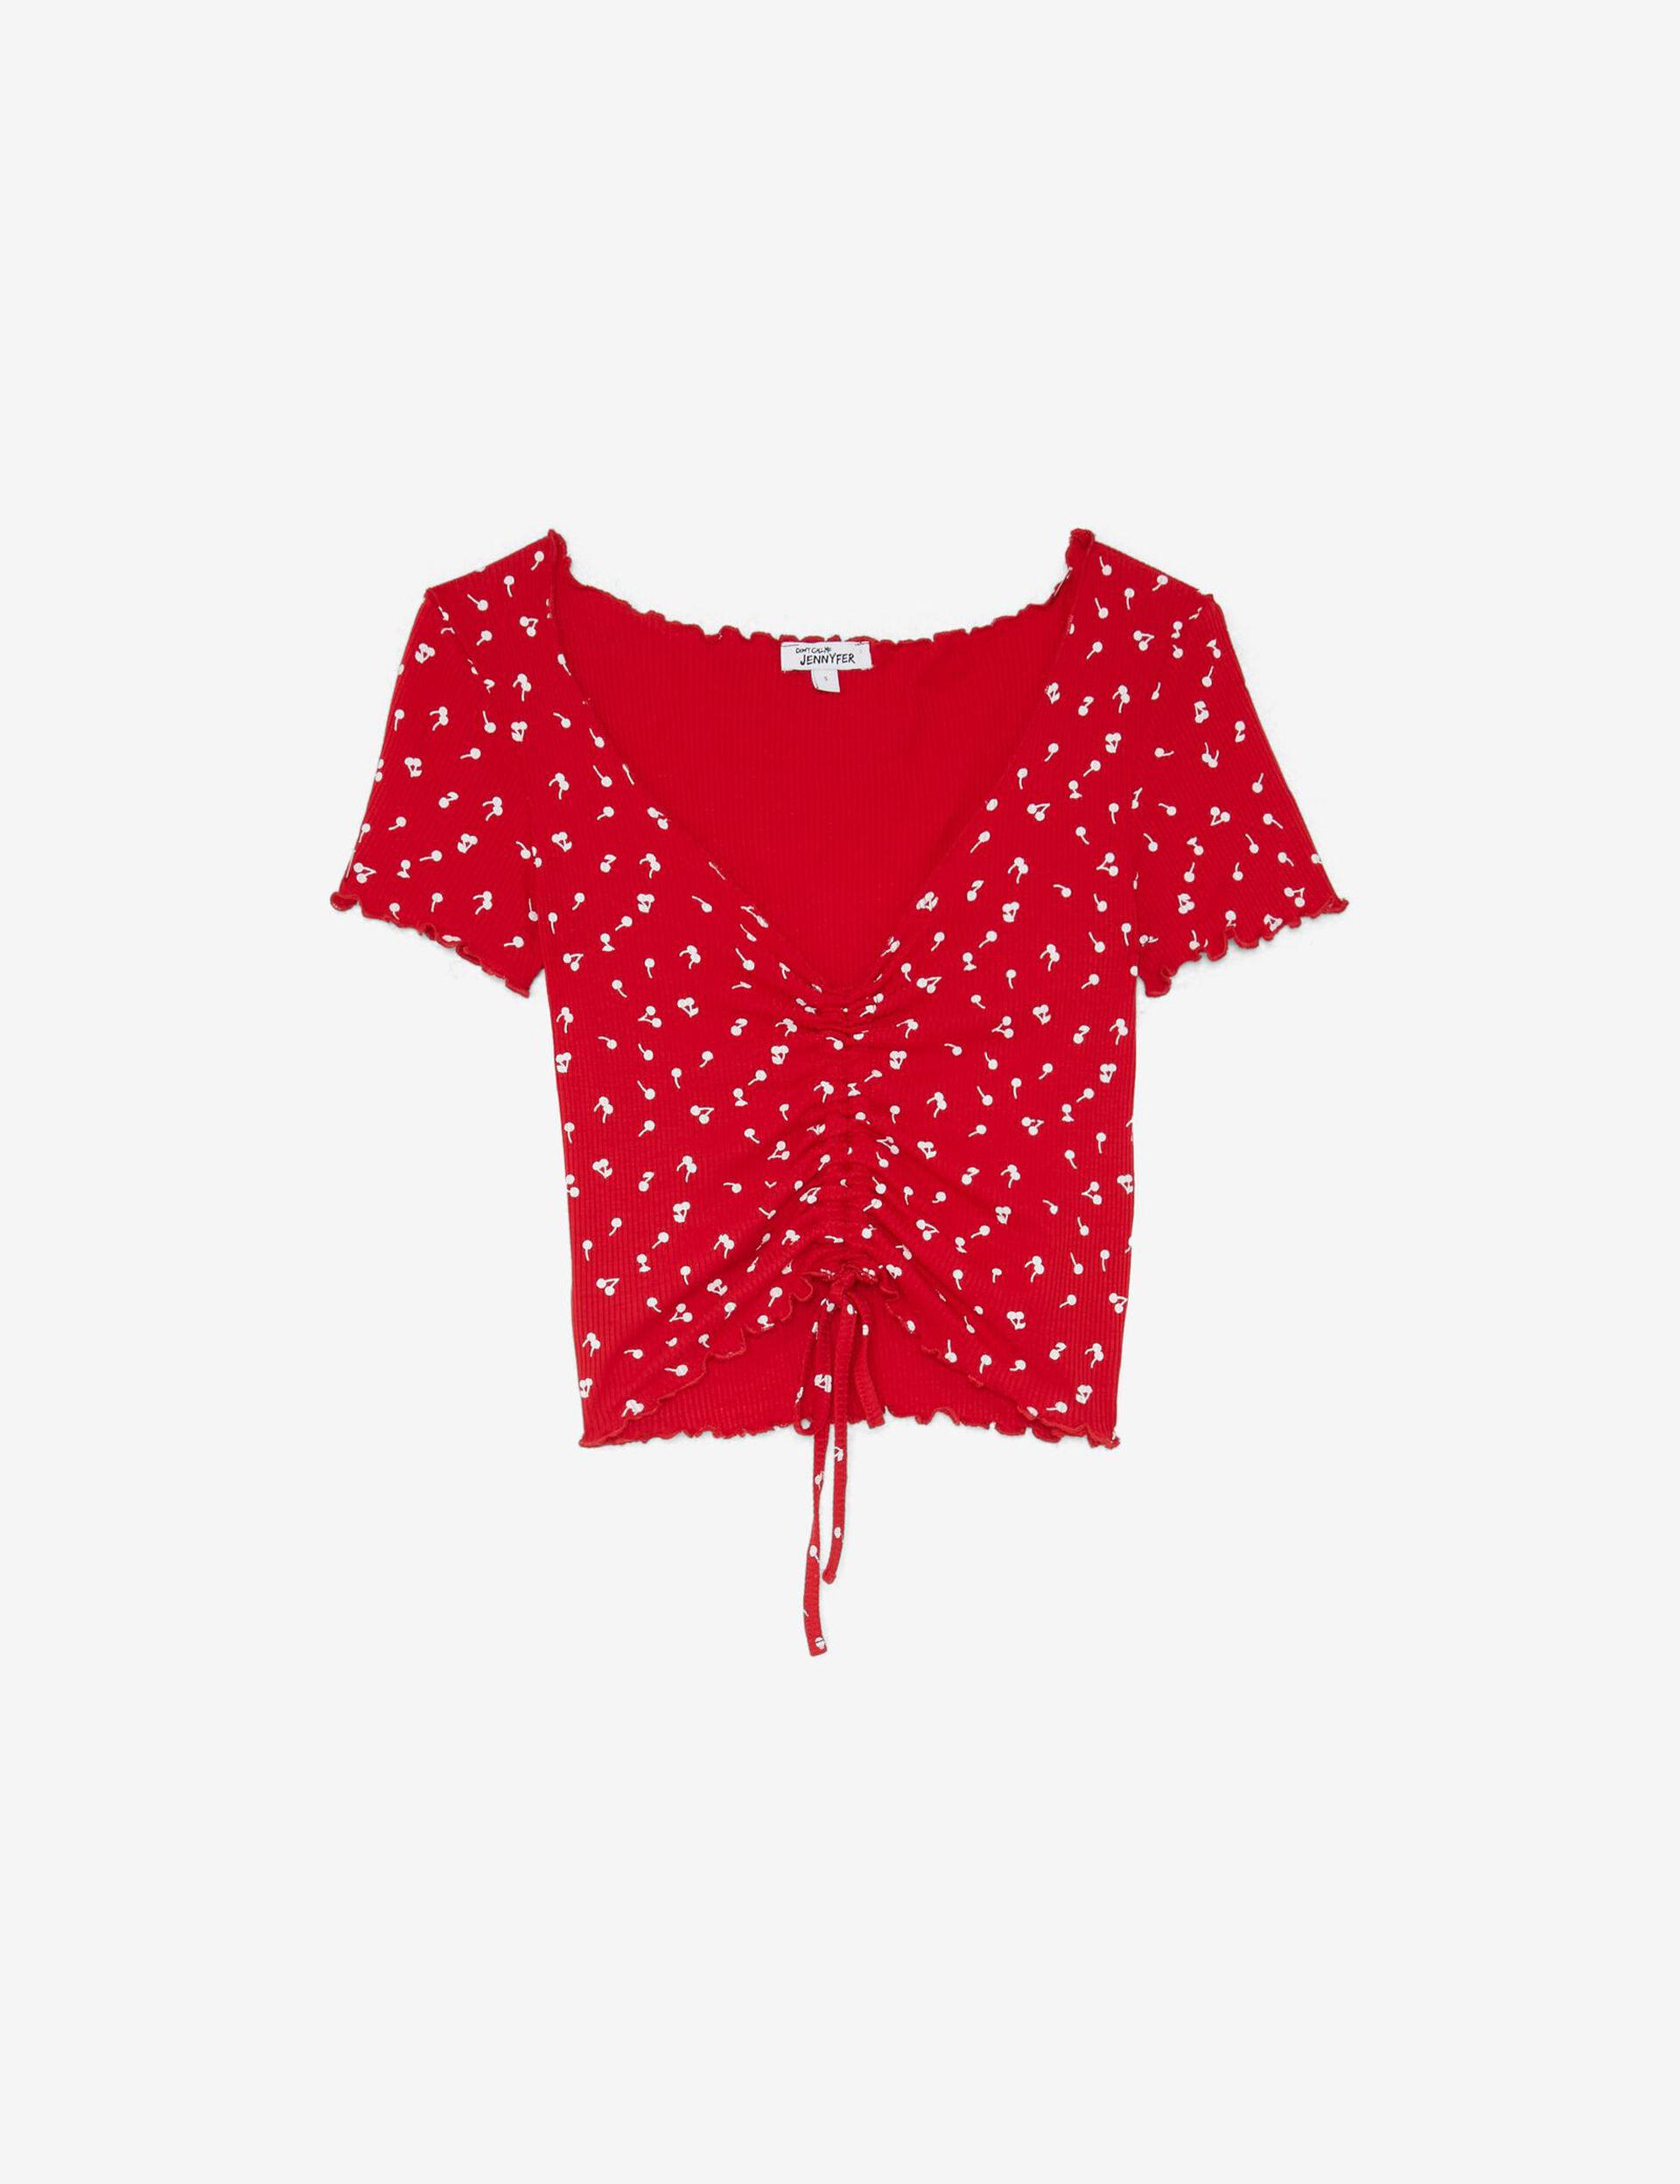 Tee-shirt court fleuri avec fronce, manches courtes, rouge